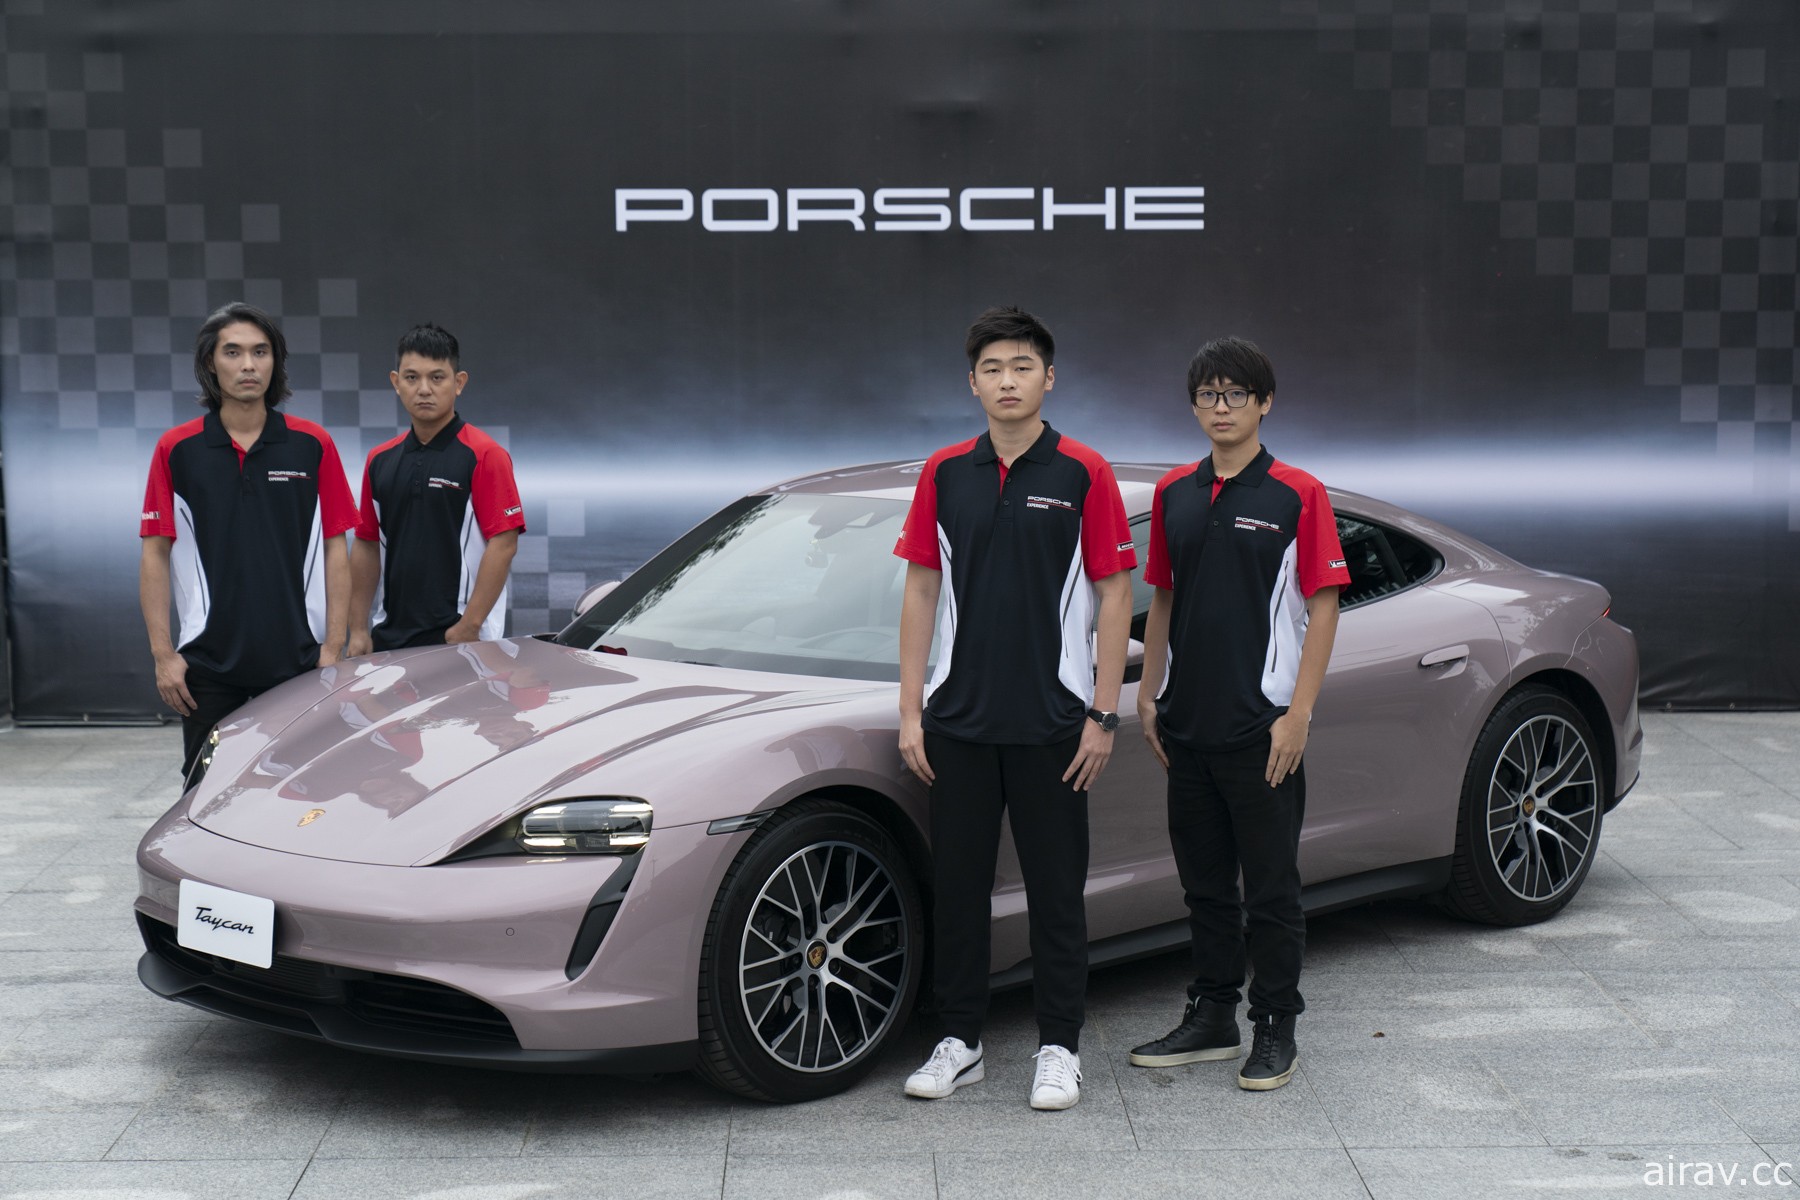 台灣五強將出戰保時捷電競賽「Porsche Gran Turismo Cup Asia Pacific」